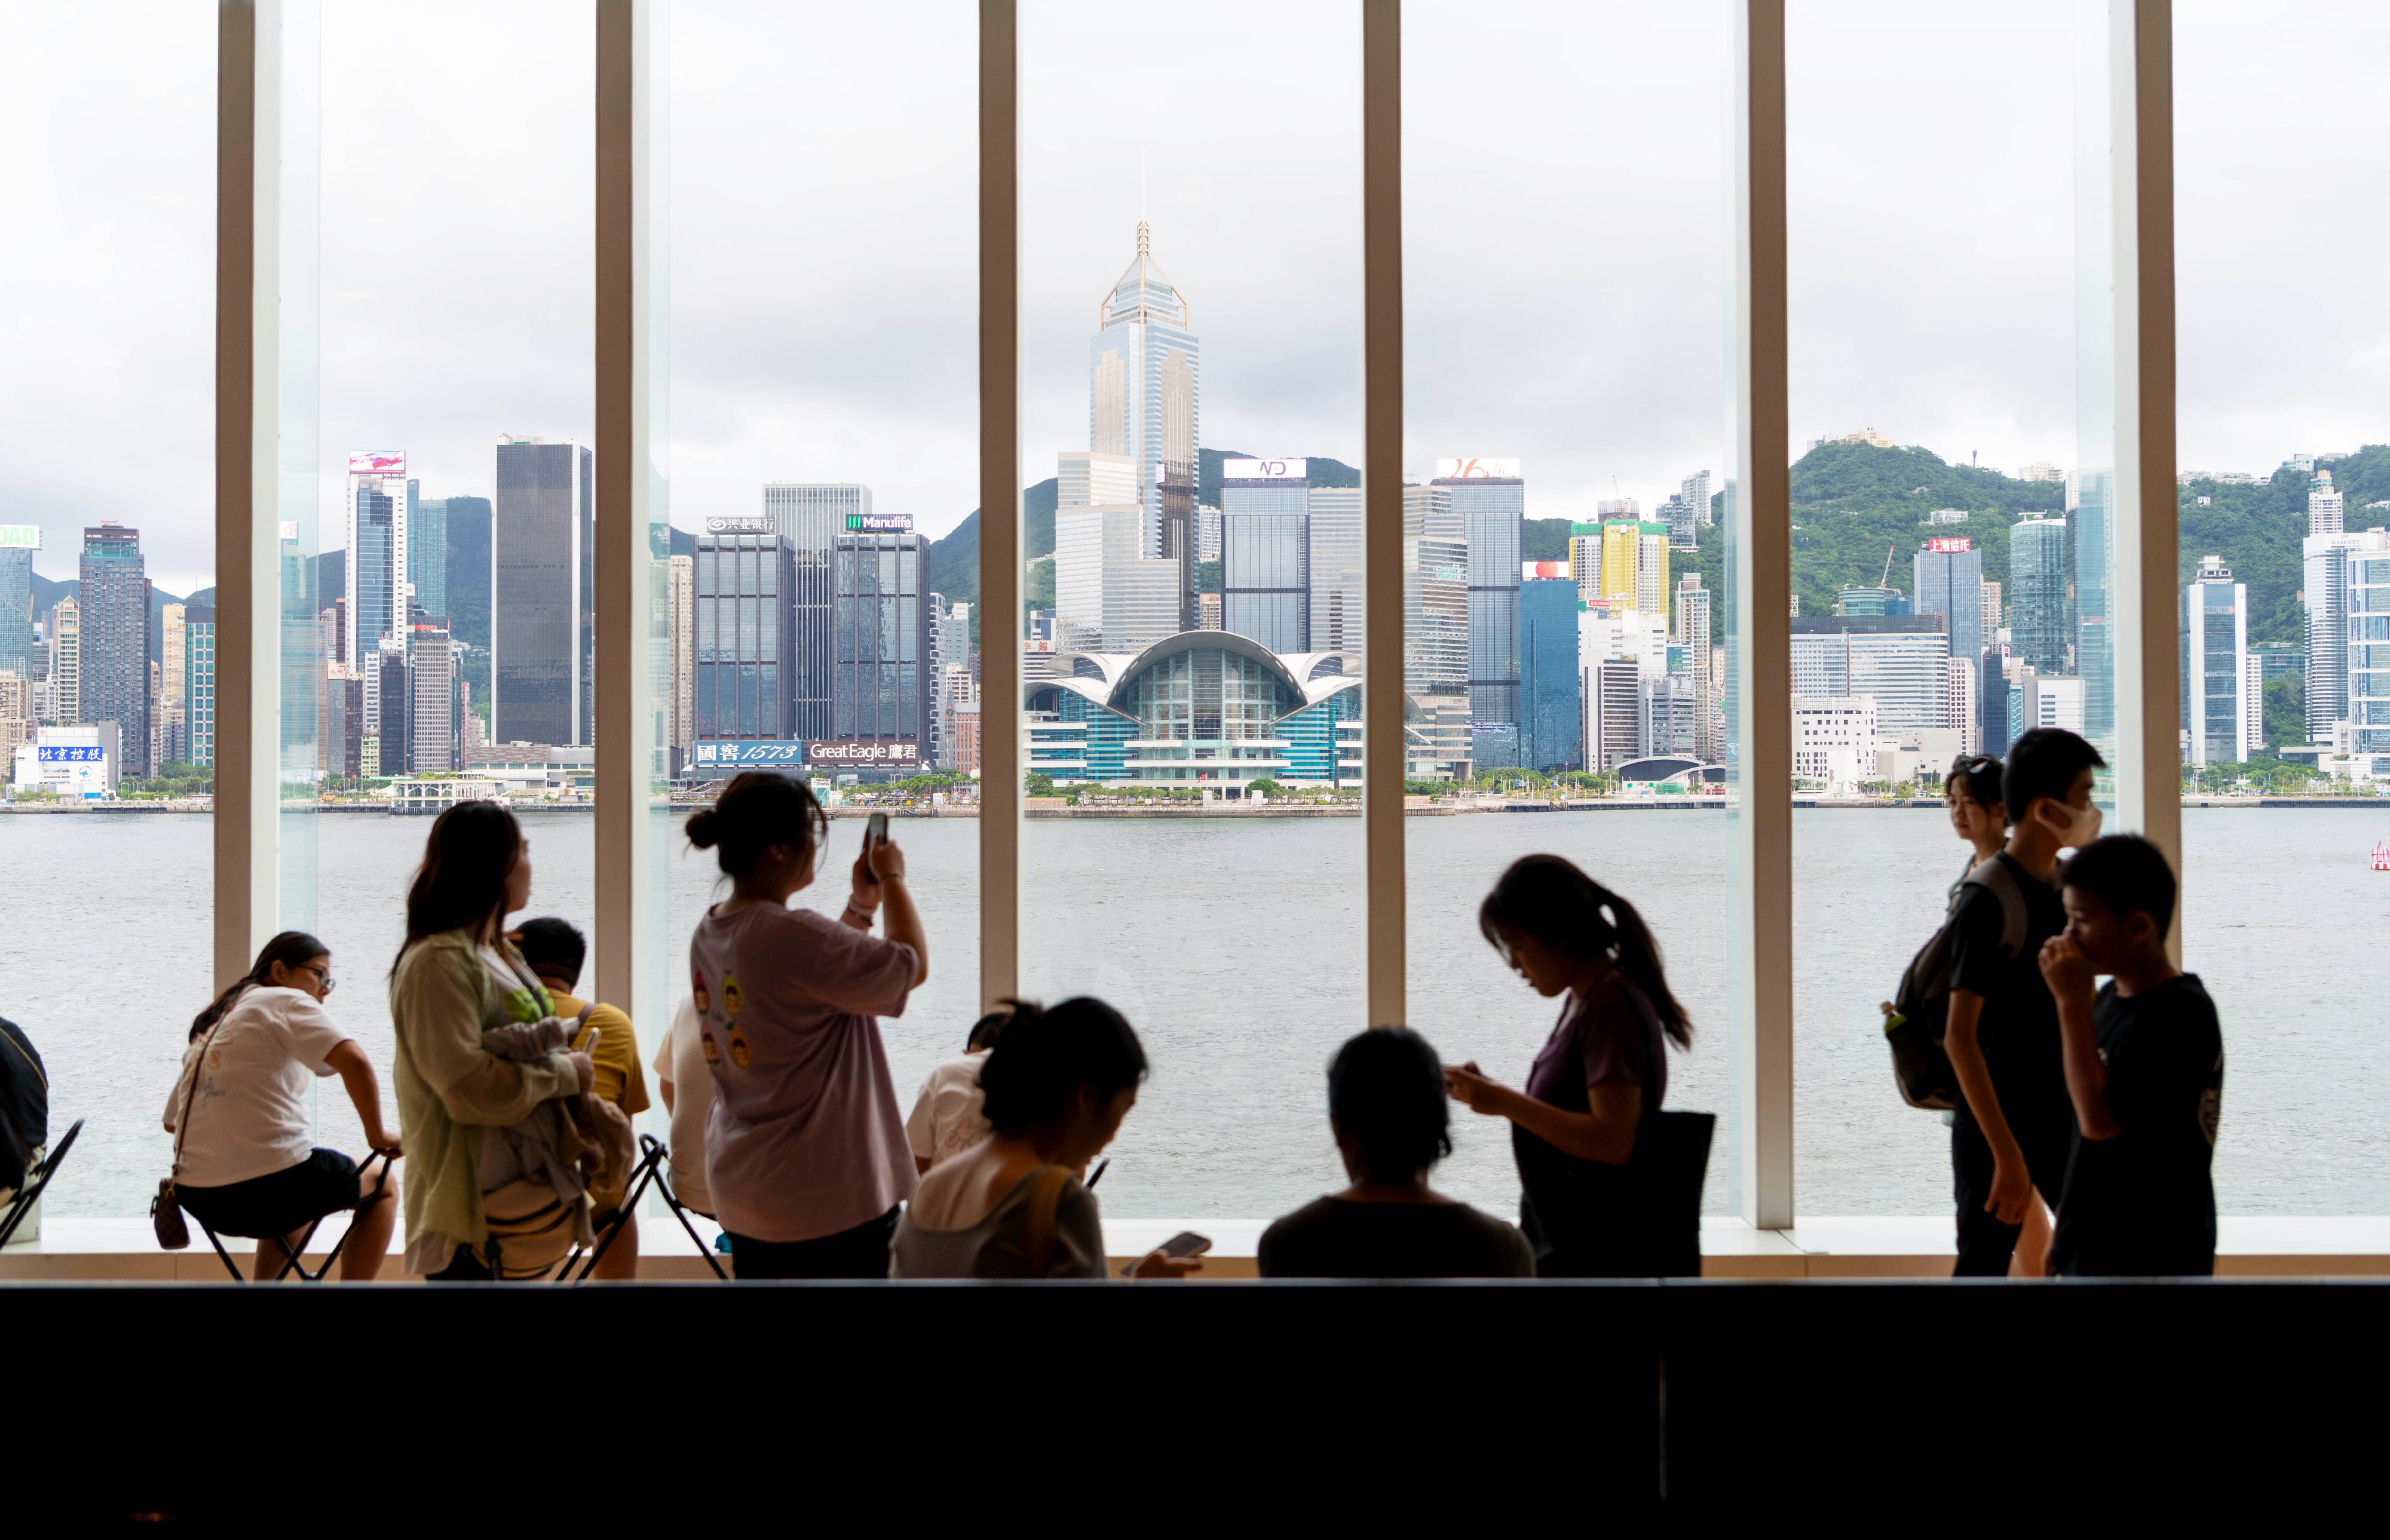 康乐及文化事务署辖下的香港艺术馆一直深受市民及旅客欢迎，自二○一九年翻新后重开以来，入场人数屡创新高，今日（八月十二日）迎来第二百万名参观者。艺术馆内每层均设有落地玻璃窗，观众在欣赏藏品的同时，也能饱览维多利亚港这件香港的标志性「艺术品」。